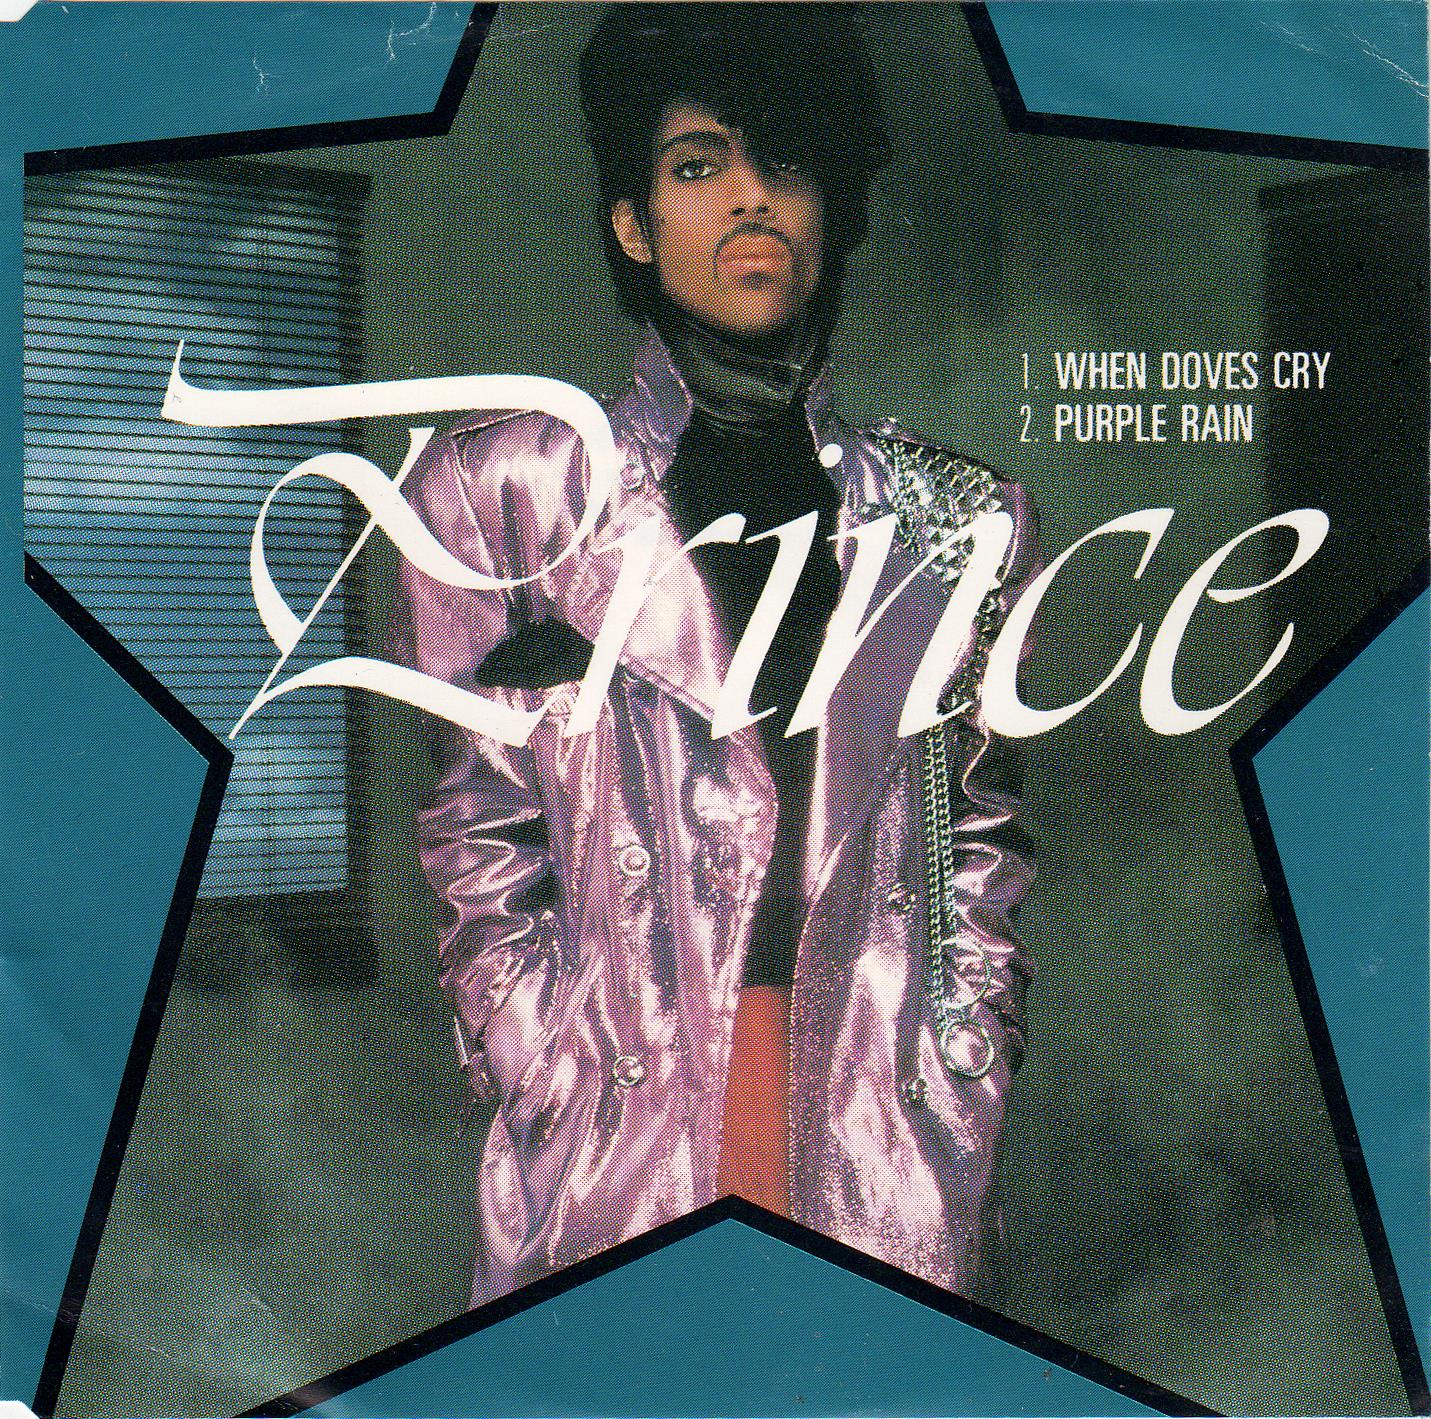 Prince - 1. When Doves Cry 2. Purple Rain (Cdm)(1989)